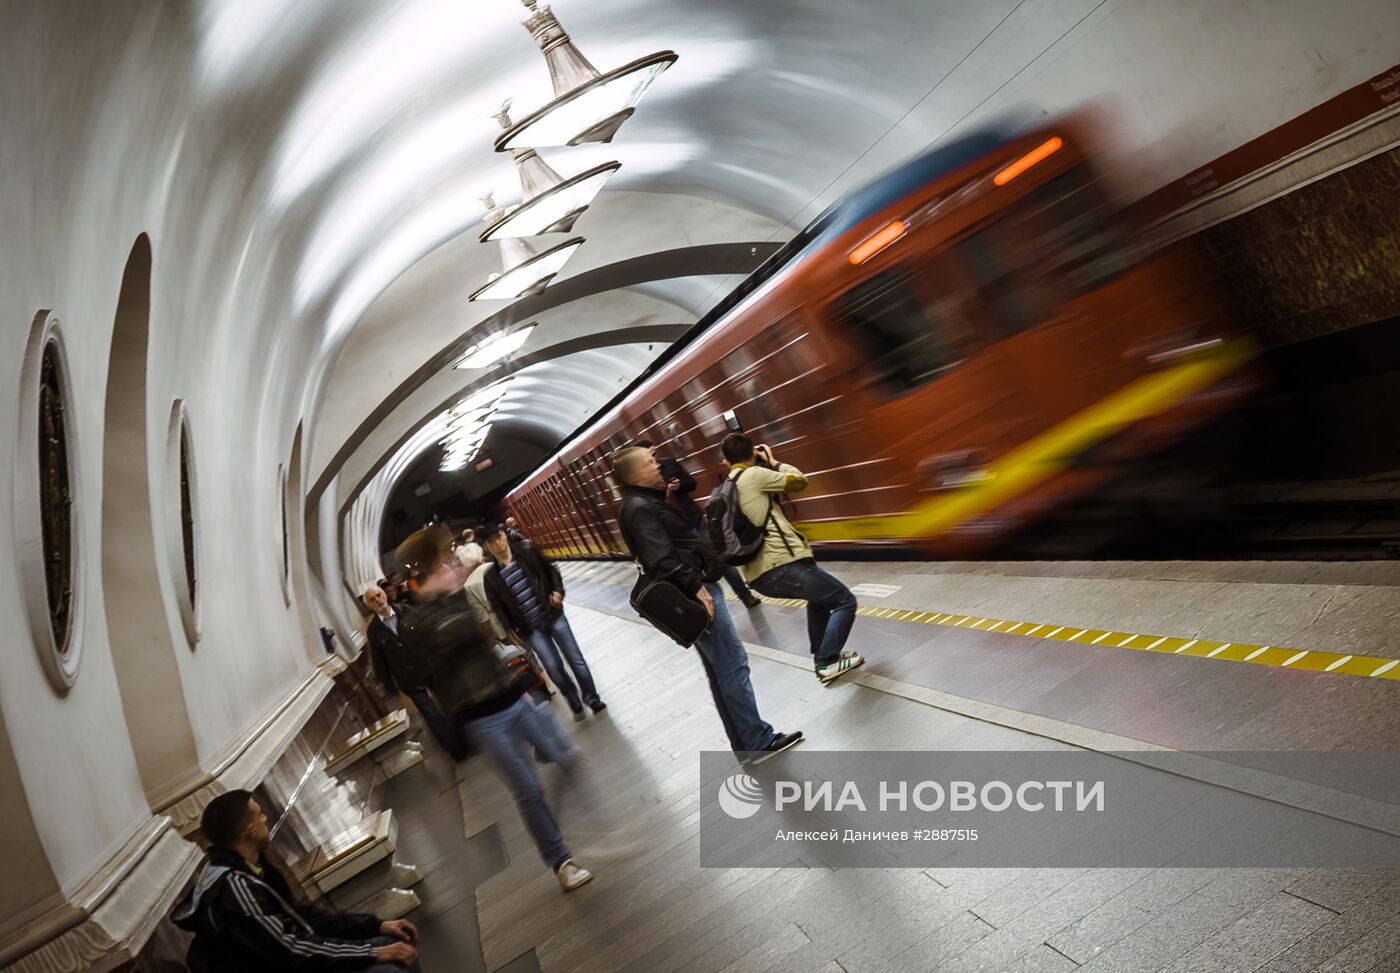 Запуск поезда "Красная стрела" в петербургском метро